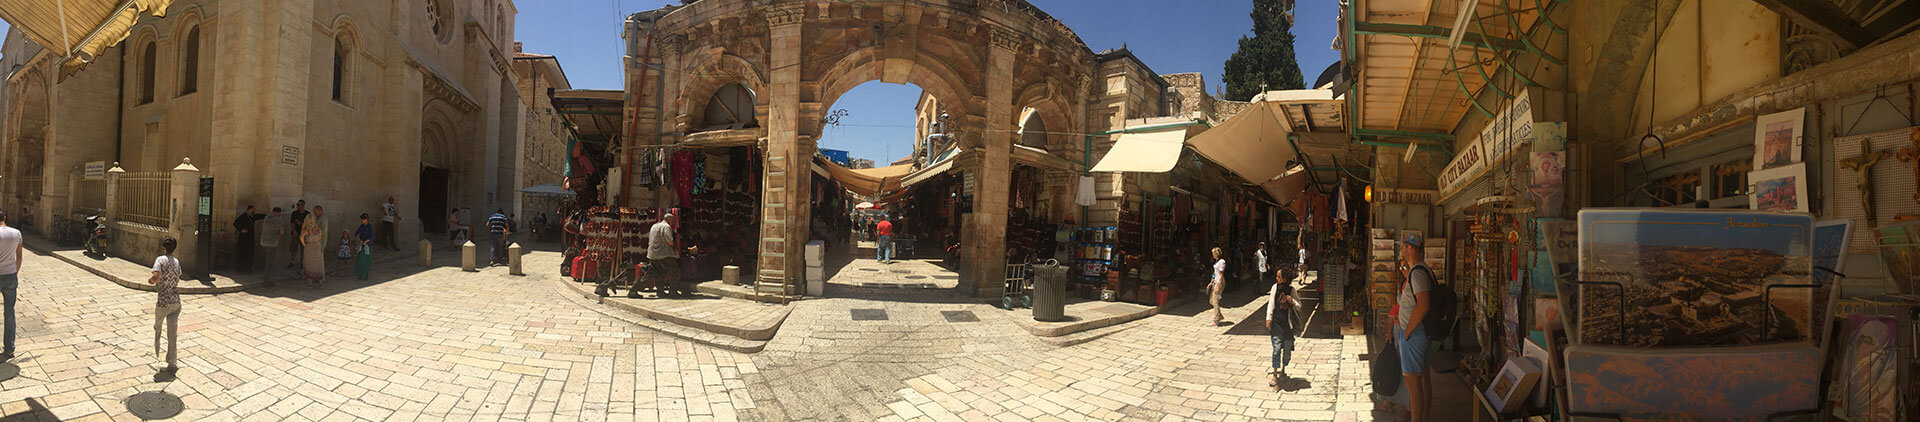 Jerusalem street scene